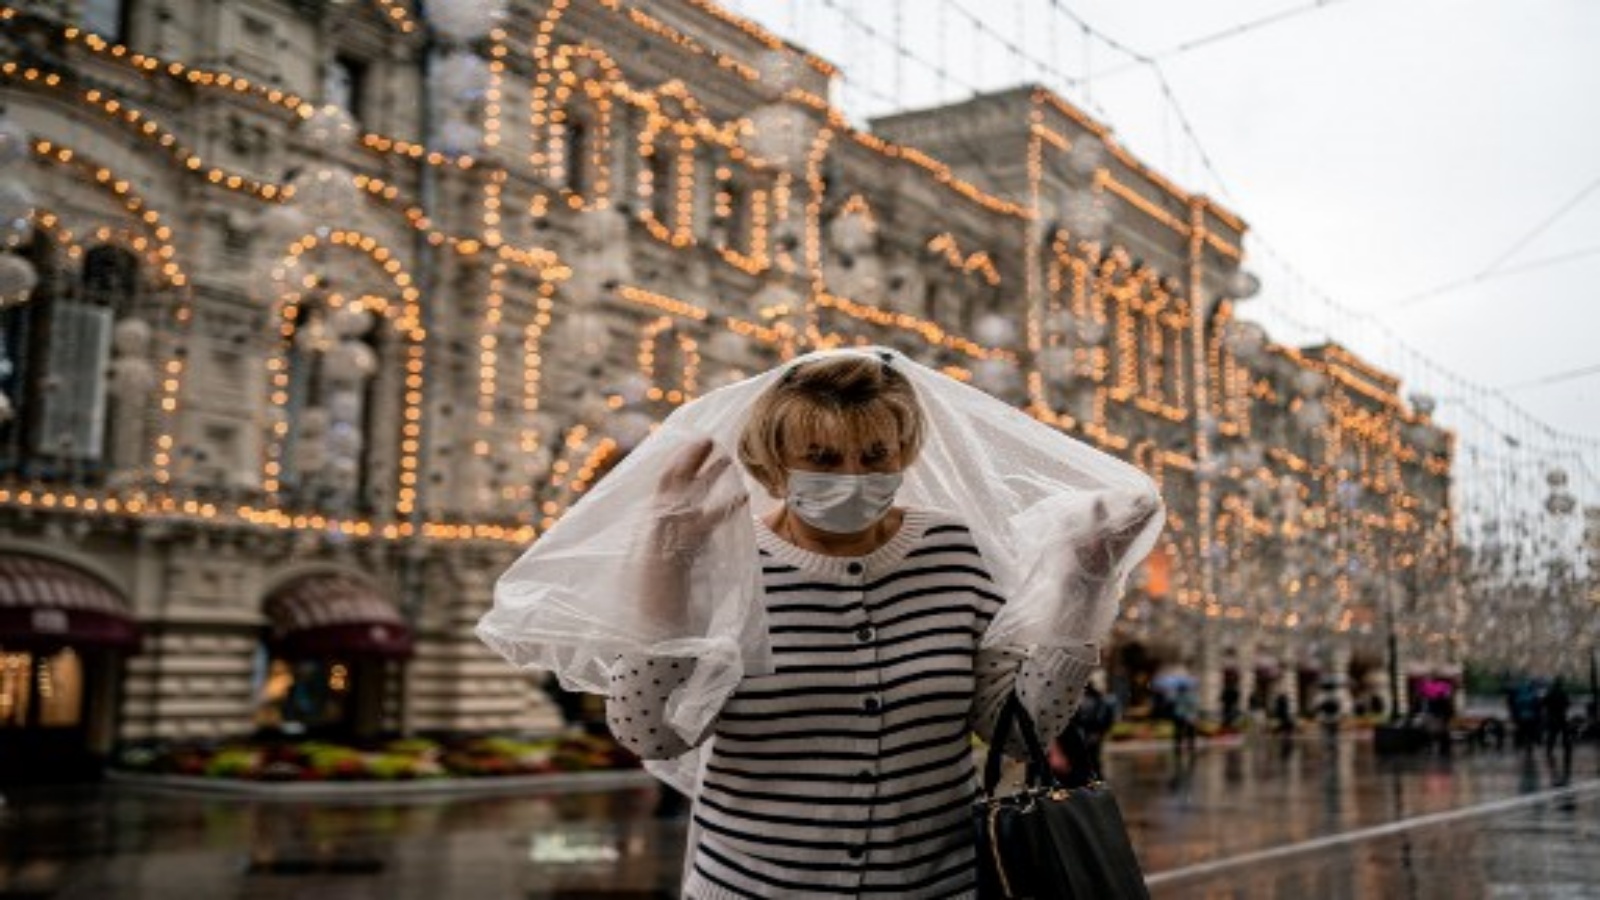 سيدة روسية تتقي المطر بغطاء بلاستك وتتقي كورونا بالكمامة